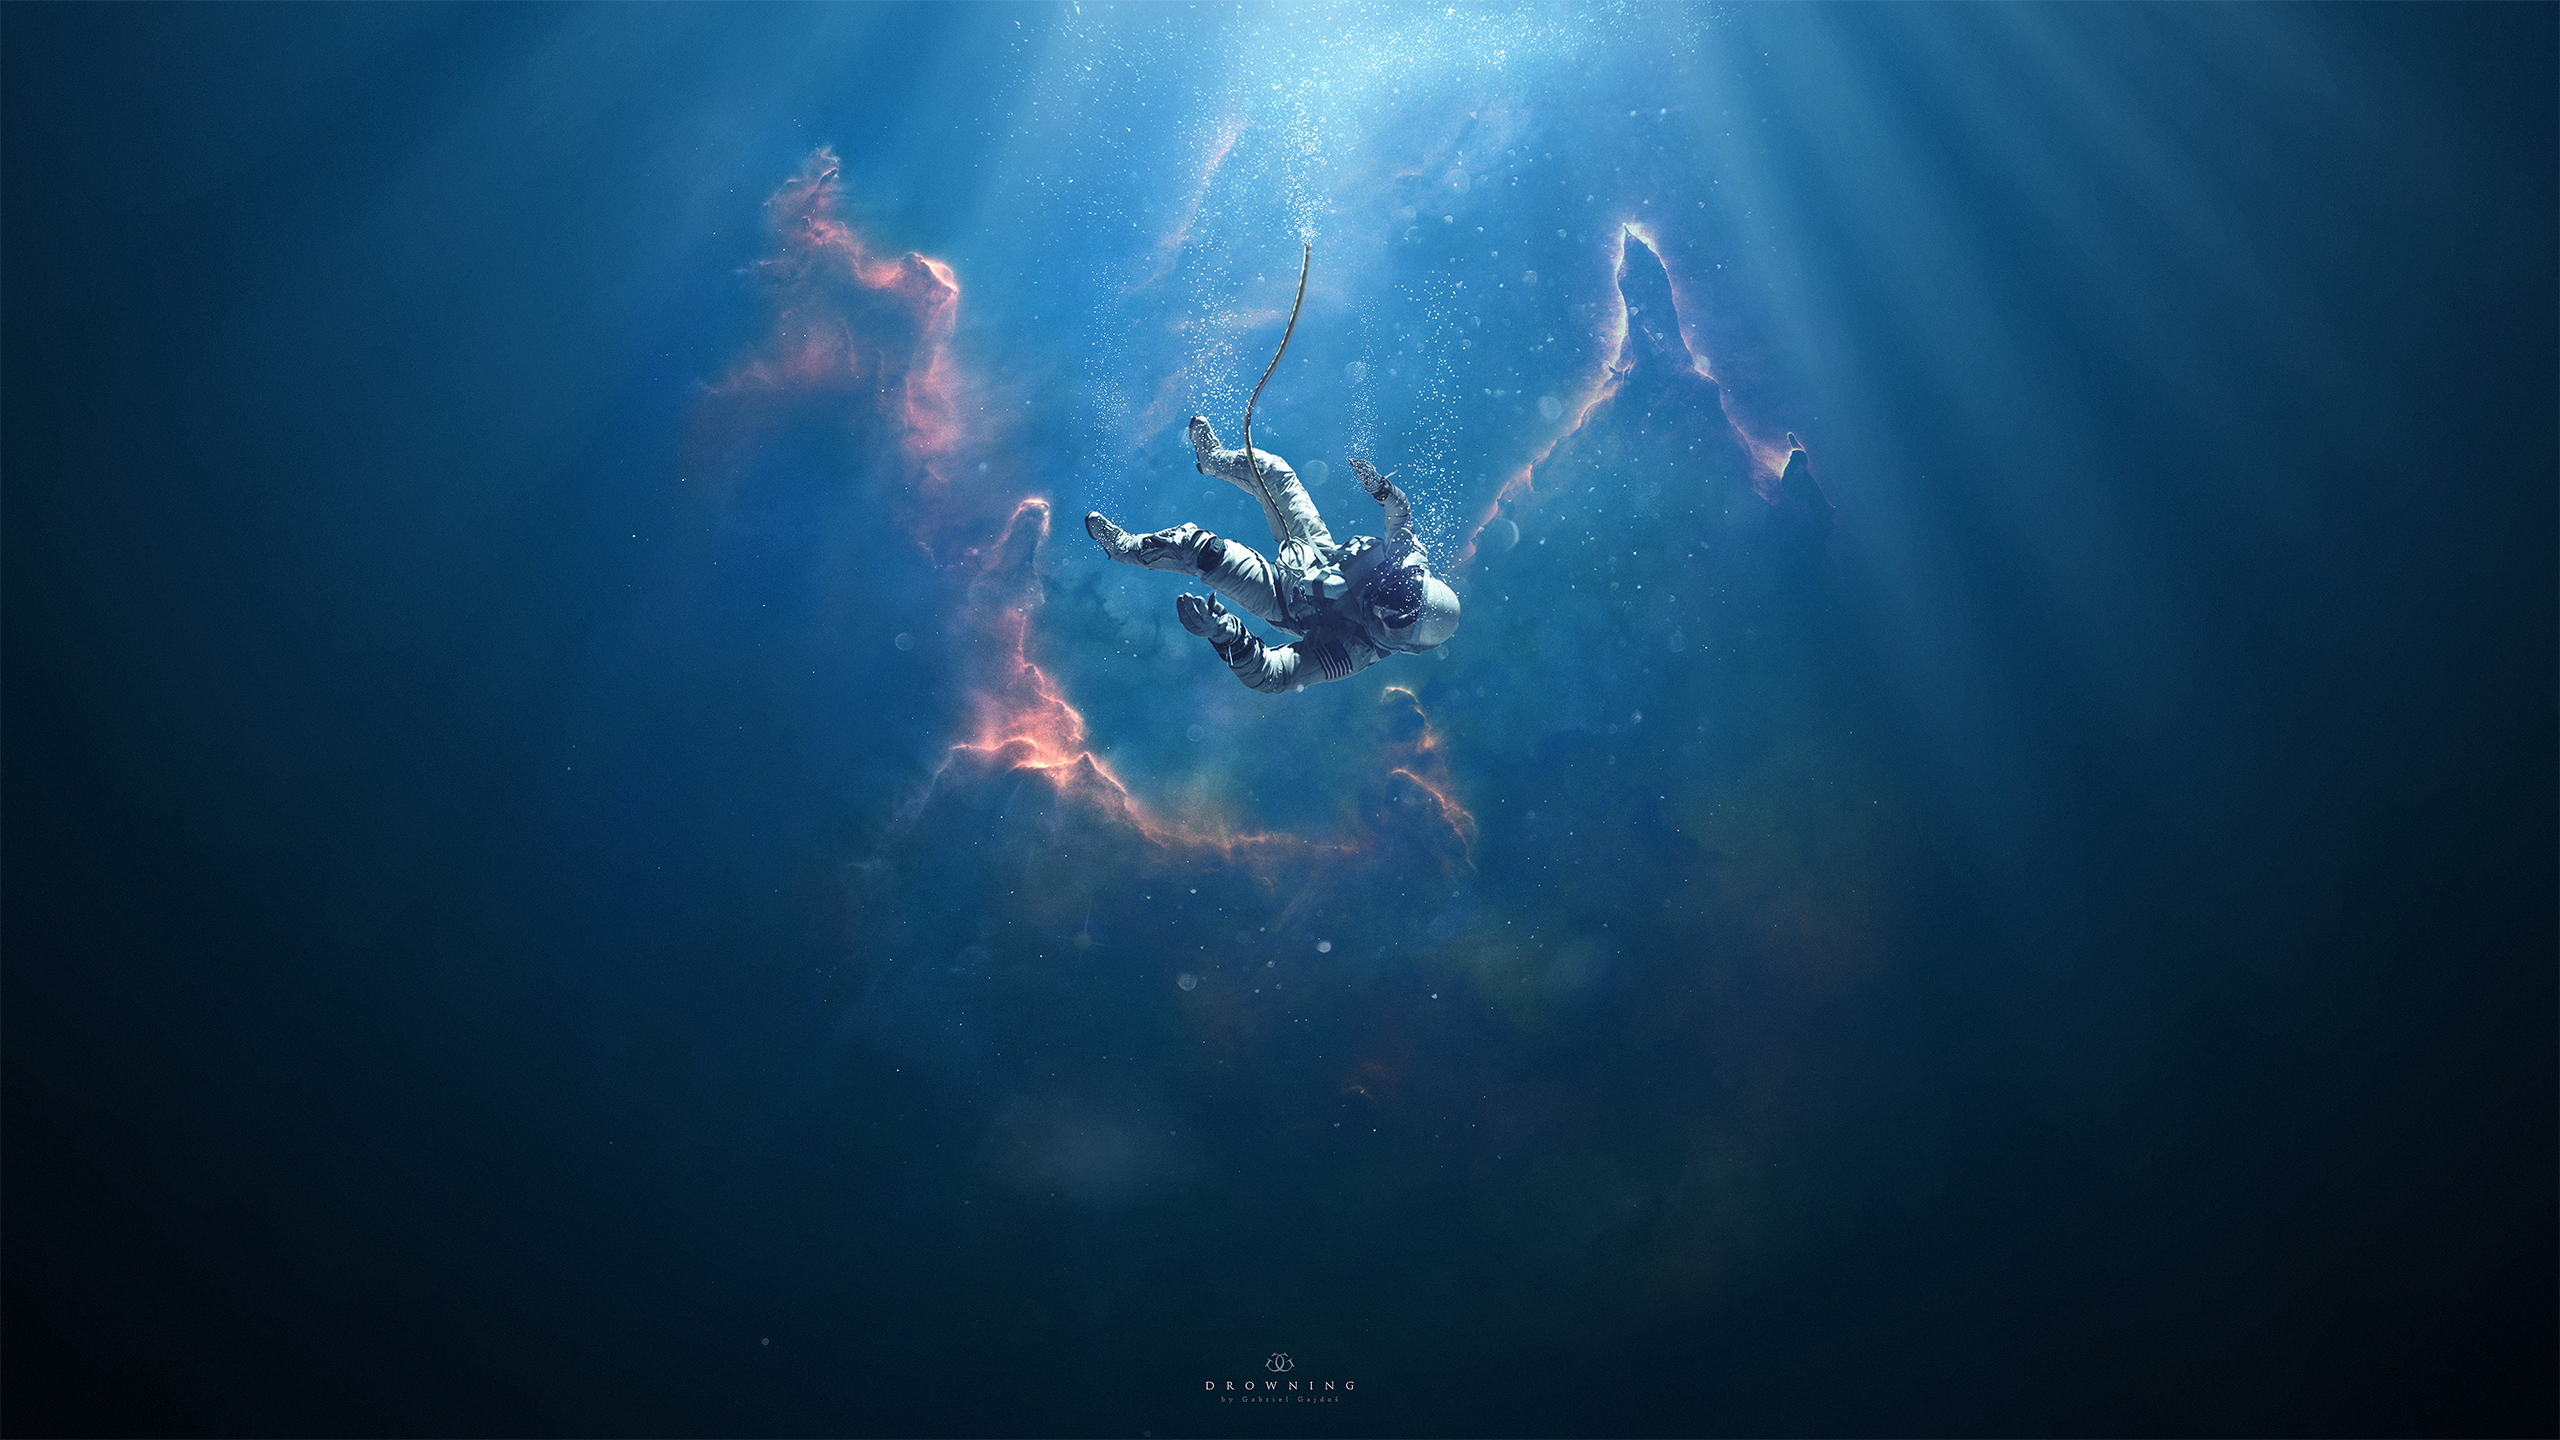 Drowning by Gabriel Gajdos